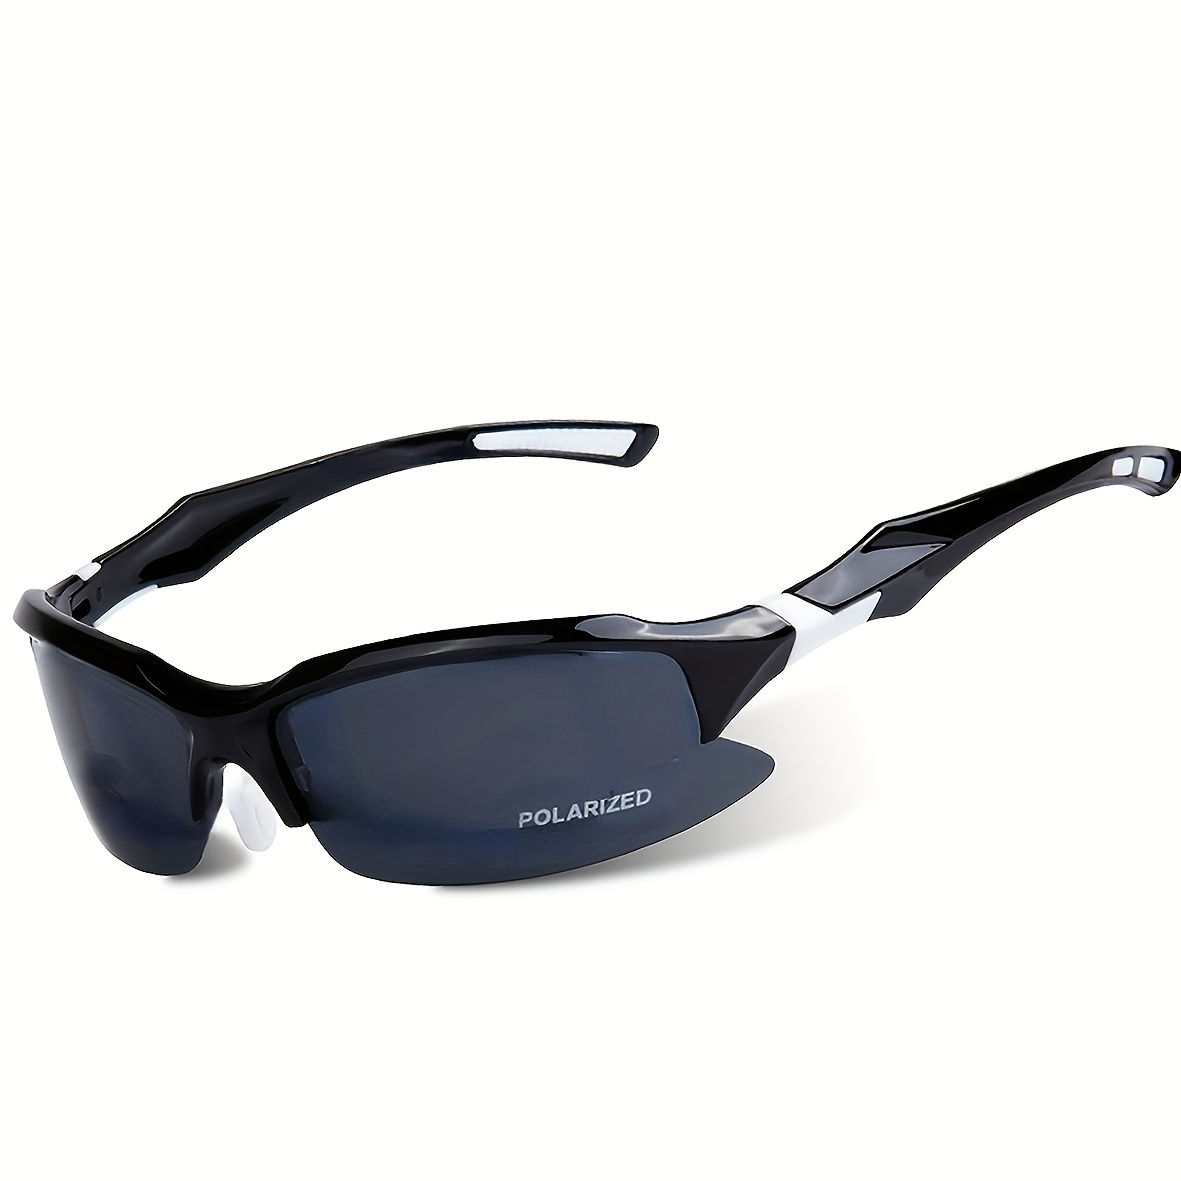 1pair 2pairs Fantasy Premium Cool Wrap Around Polarized Sunglasses